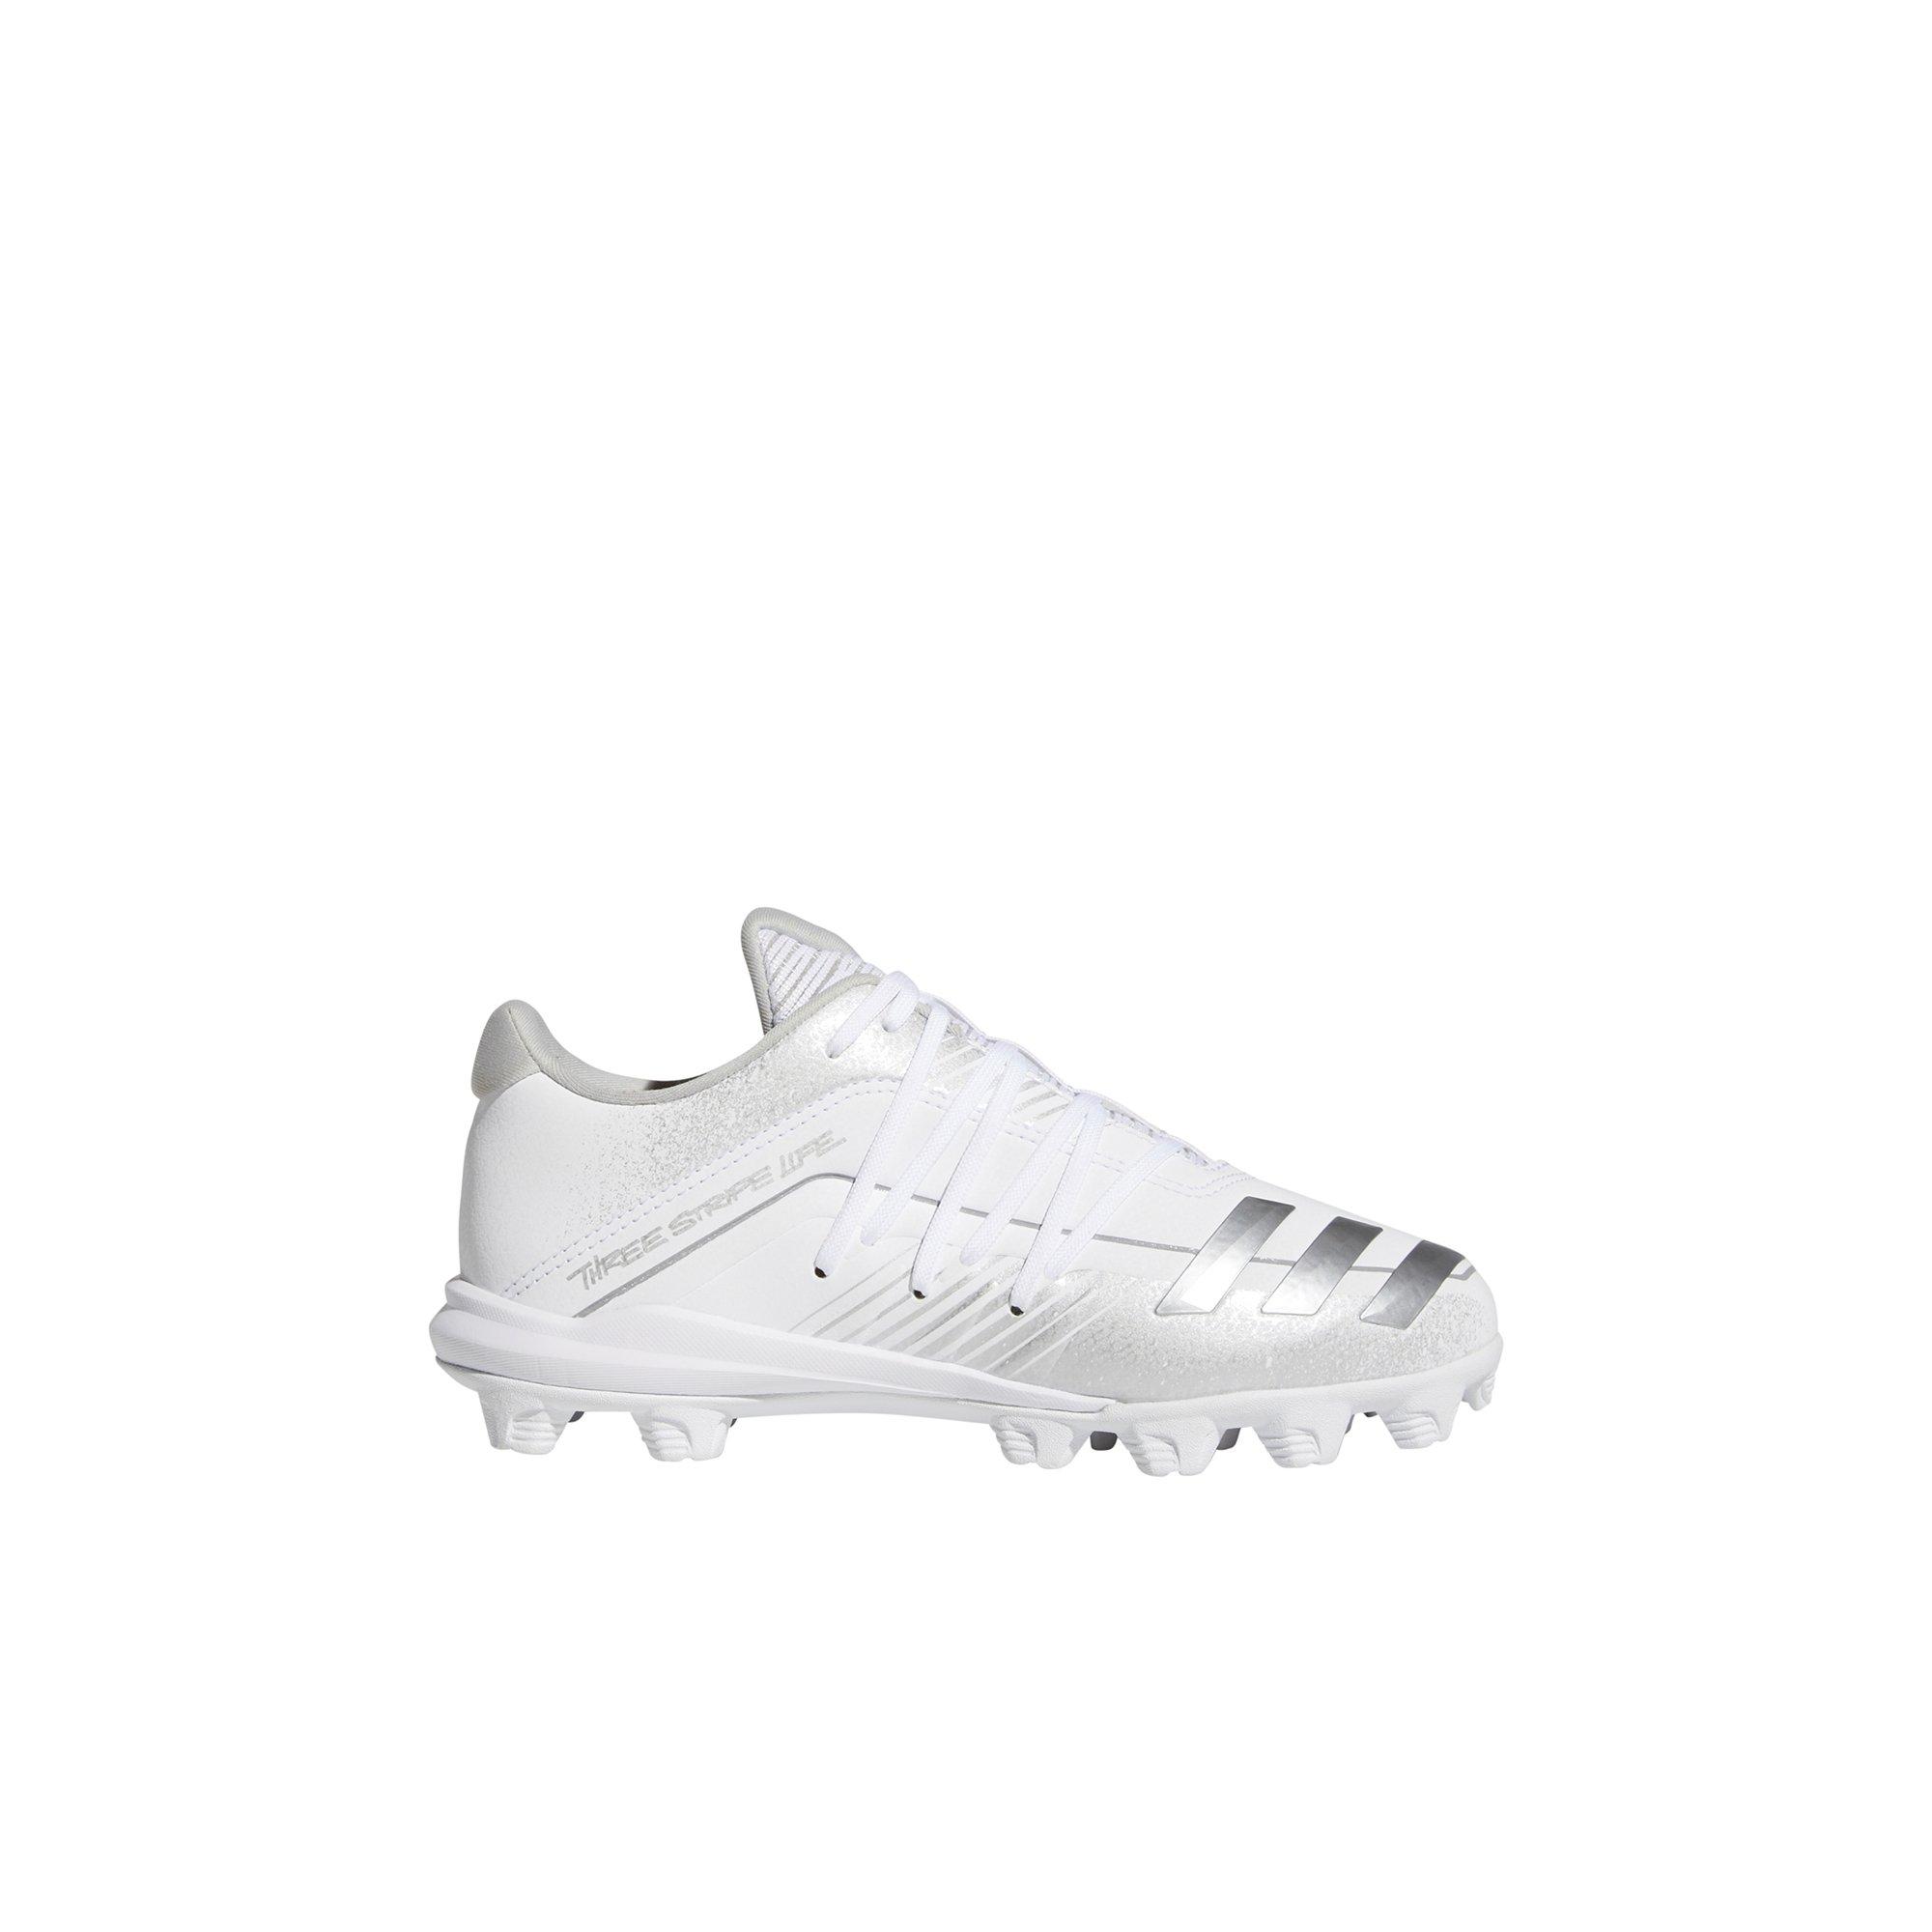 white adidas baseball cleats